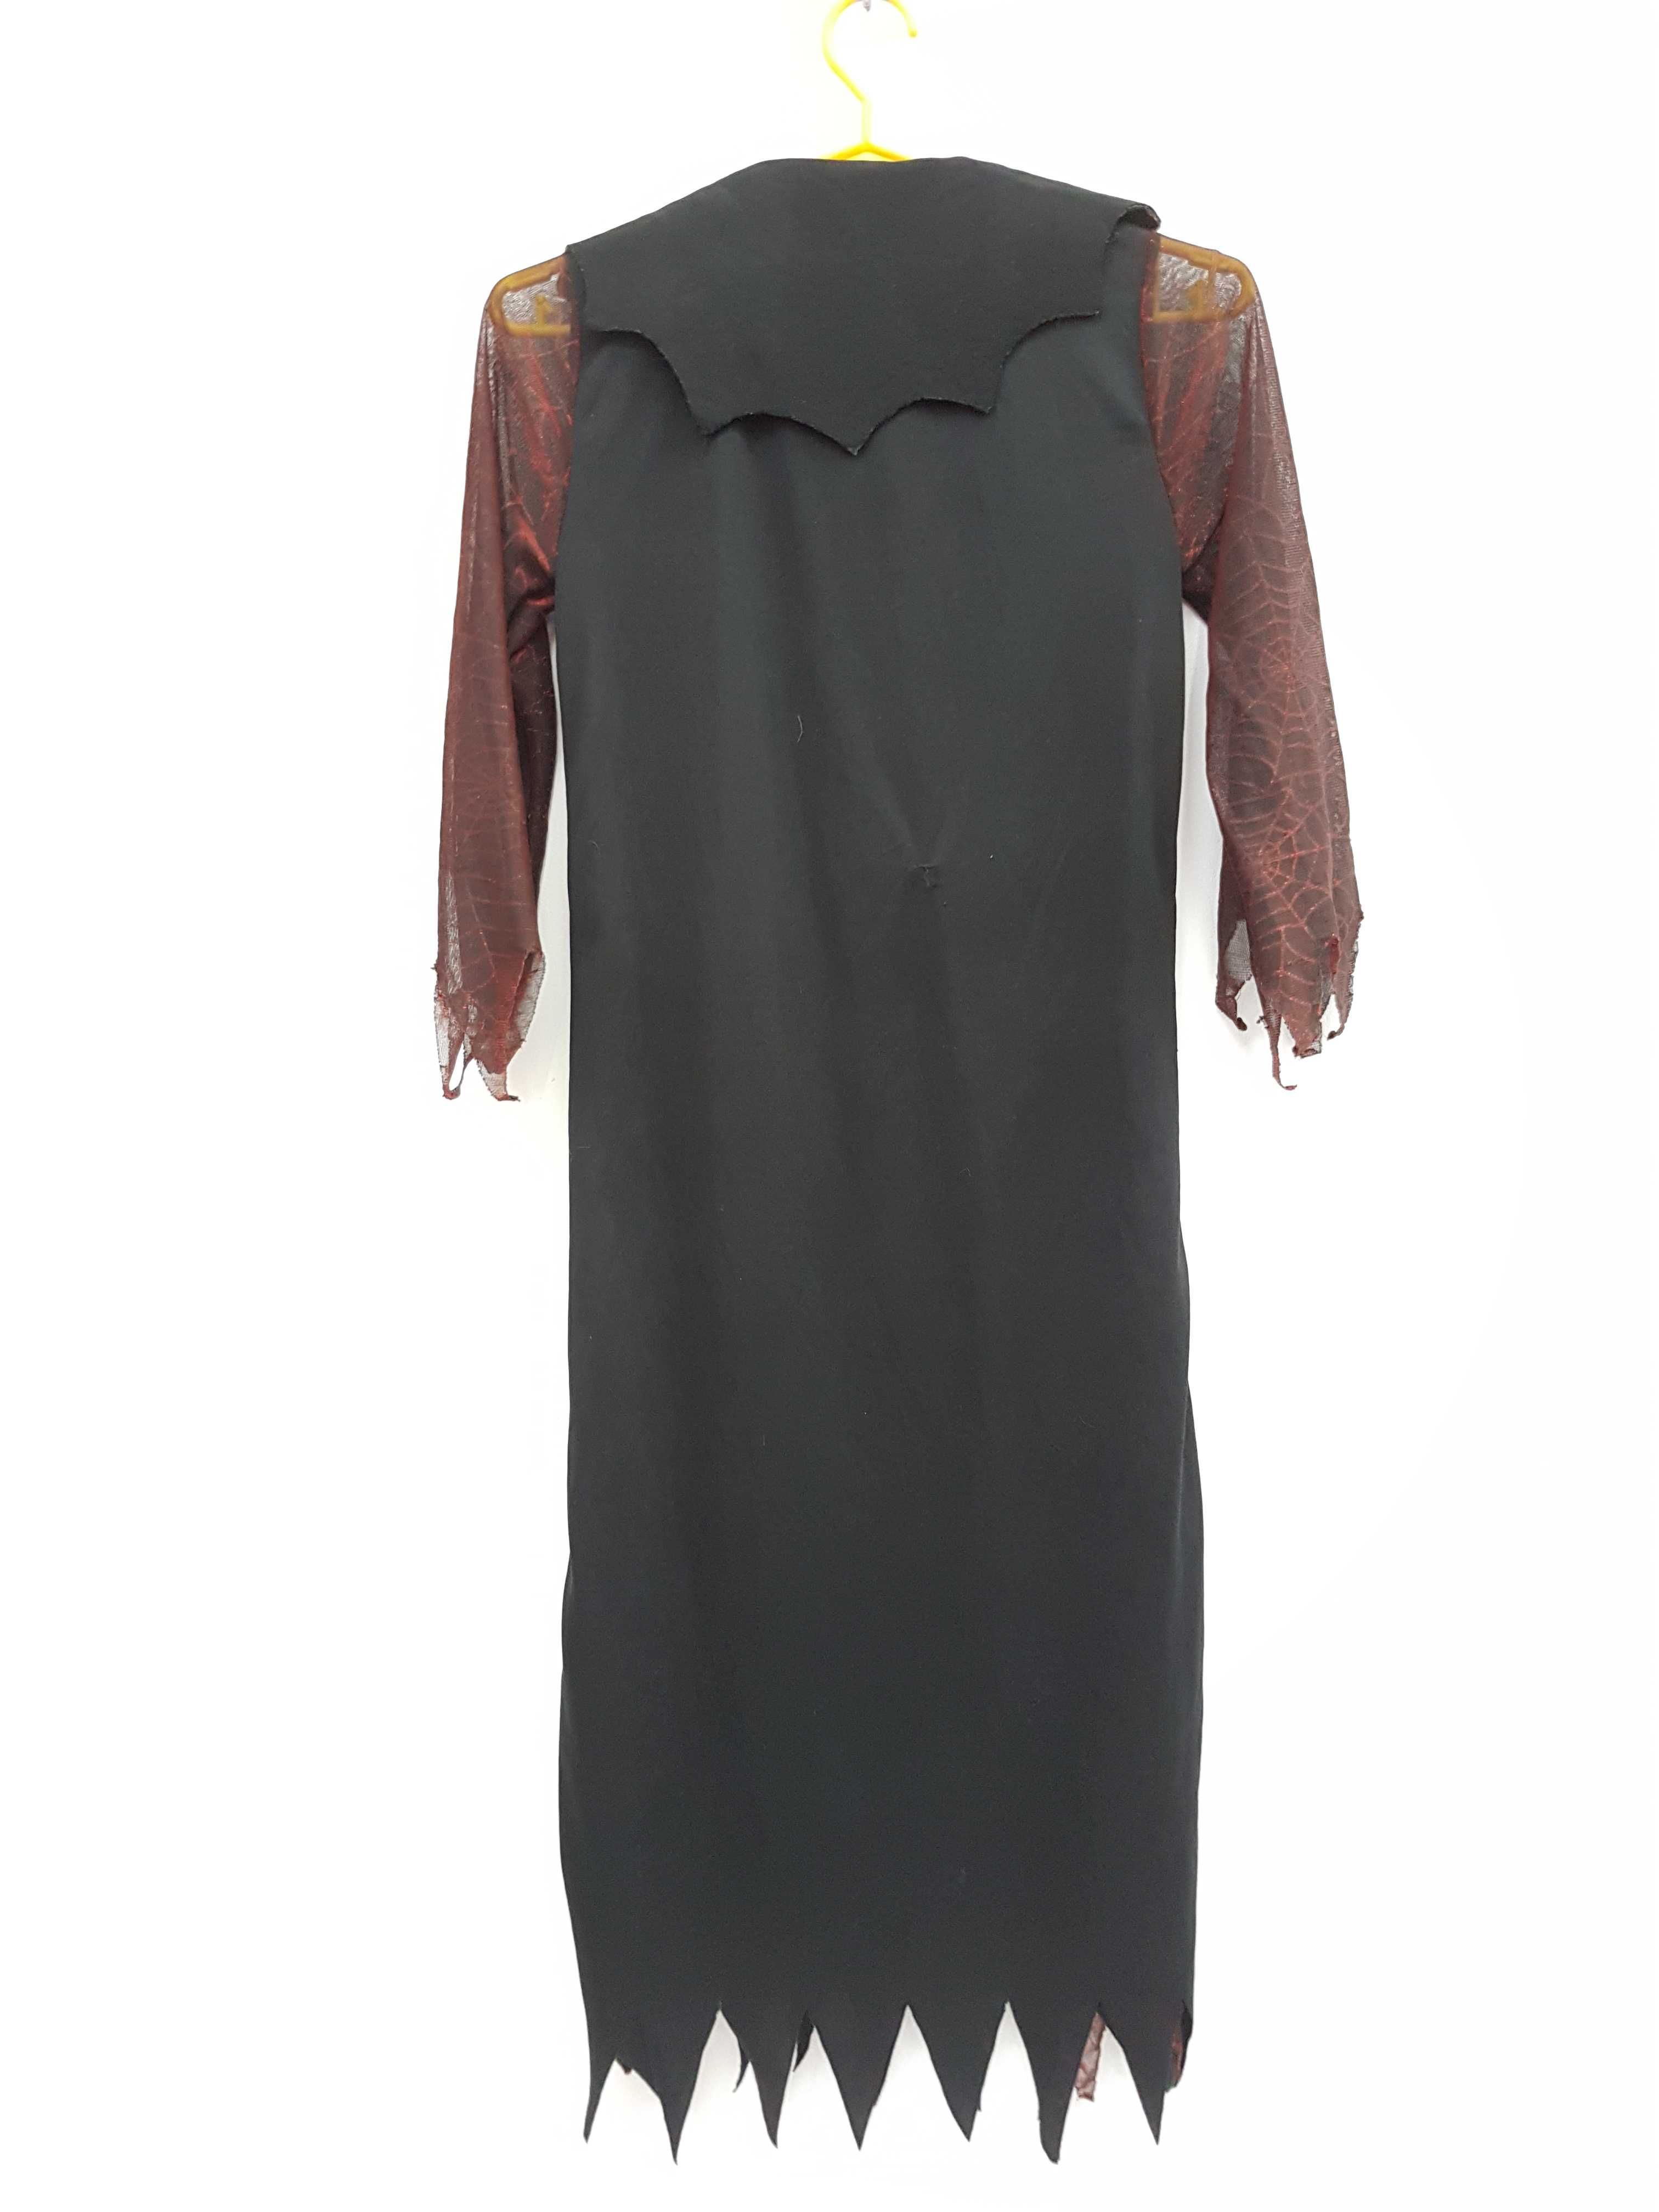 Sukienka czarownica wiedźma Halloween 1140 cm A2080